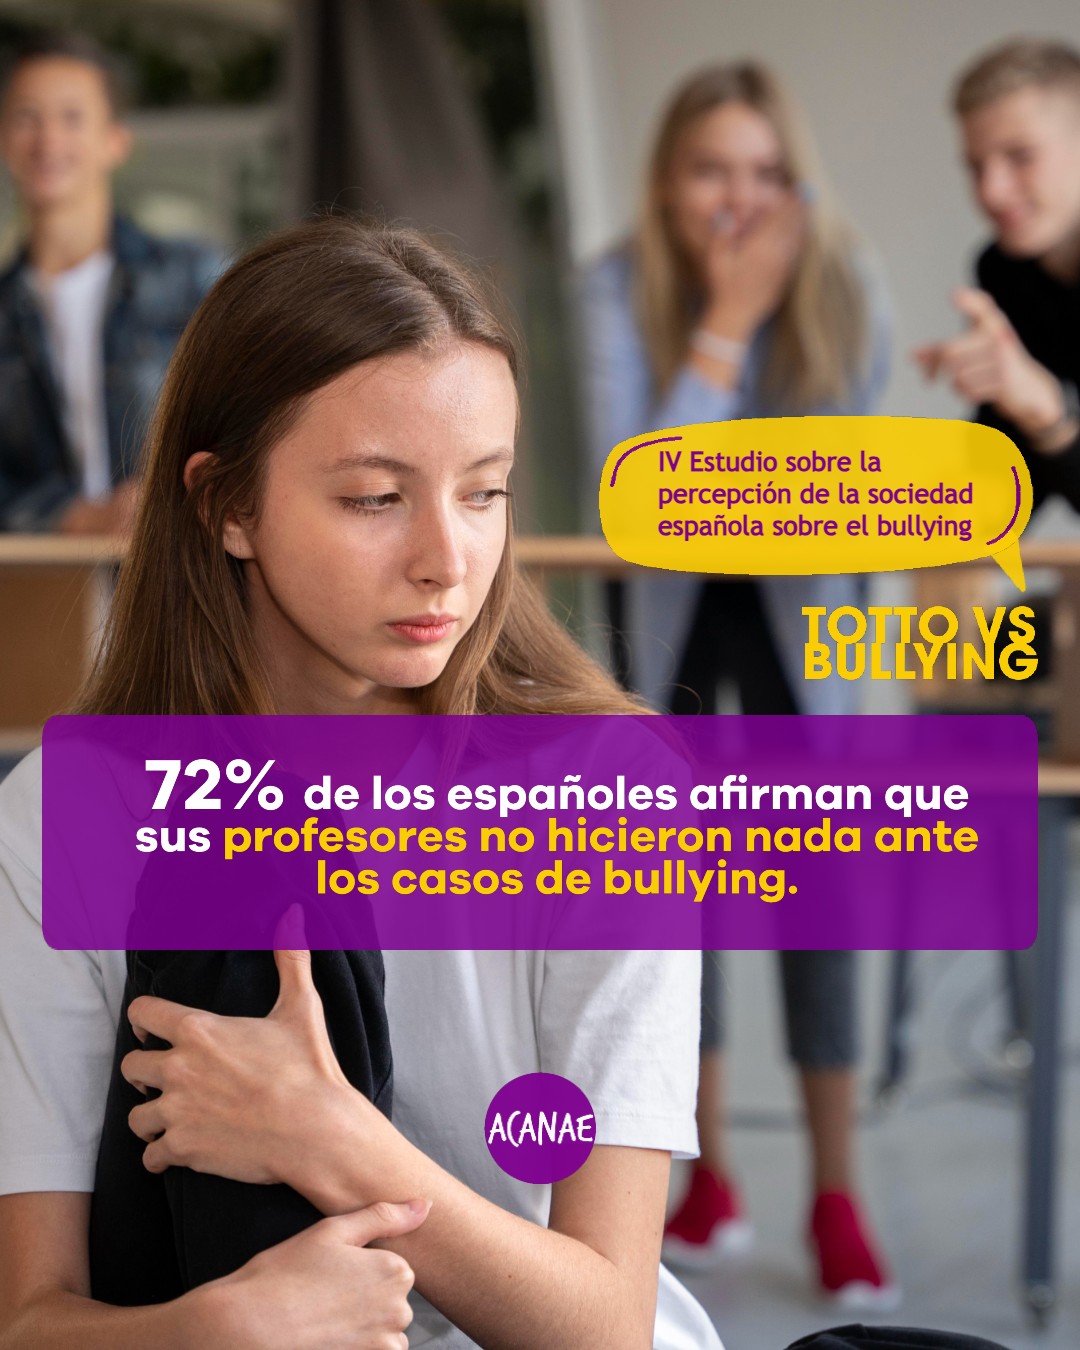 El 72% de los españoles afirman que sus profesores no hicieron nada ante los casos de bullying.